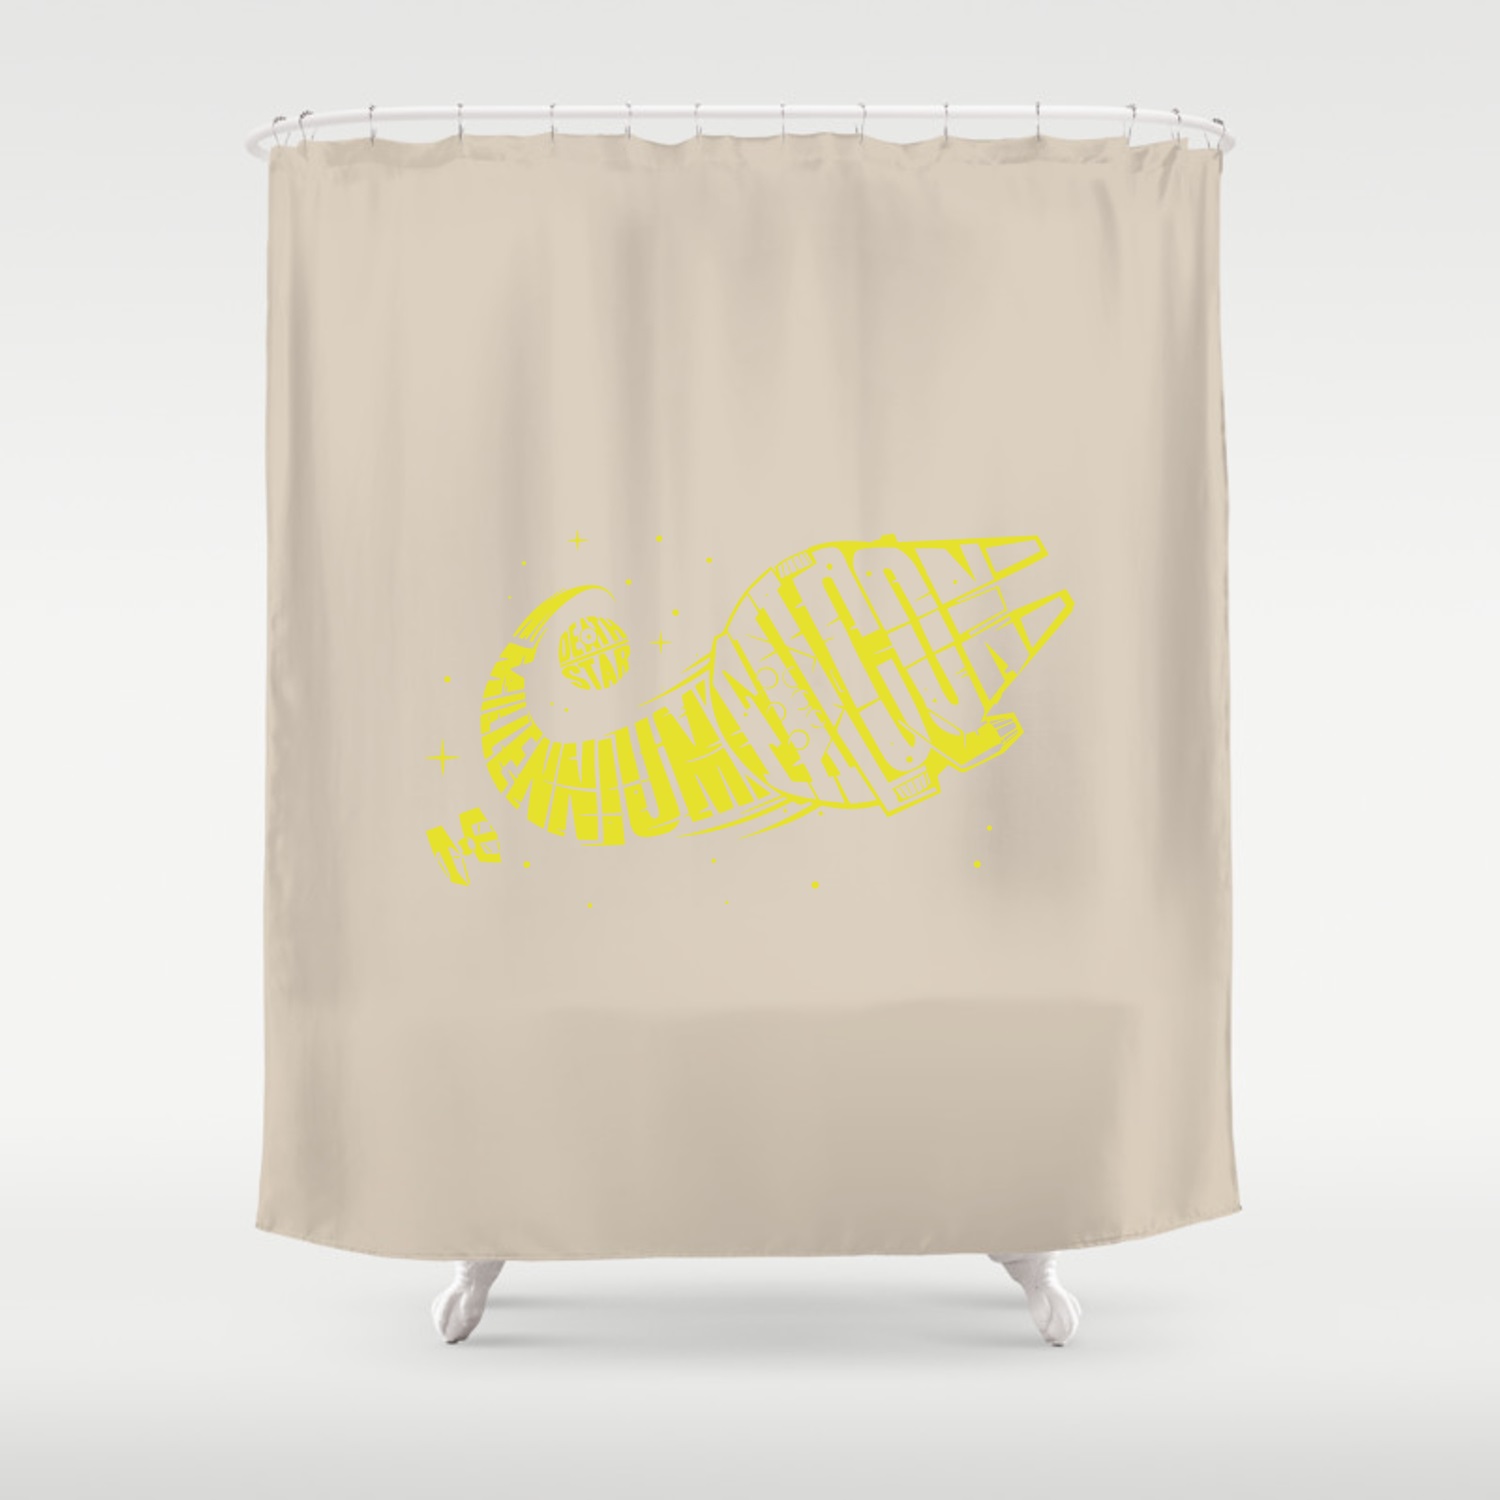 Star Wars “Millenium Falcon” Shower Curtain Beige/Yellow